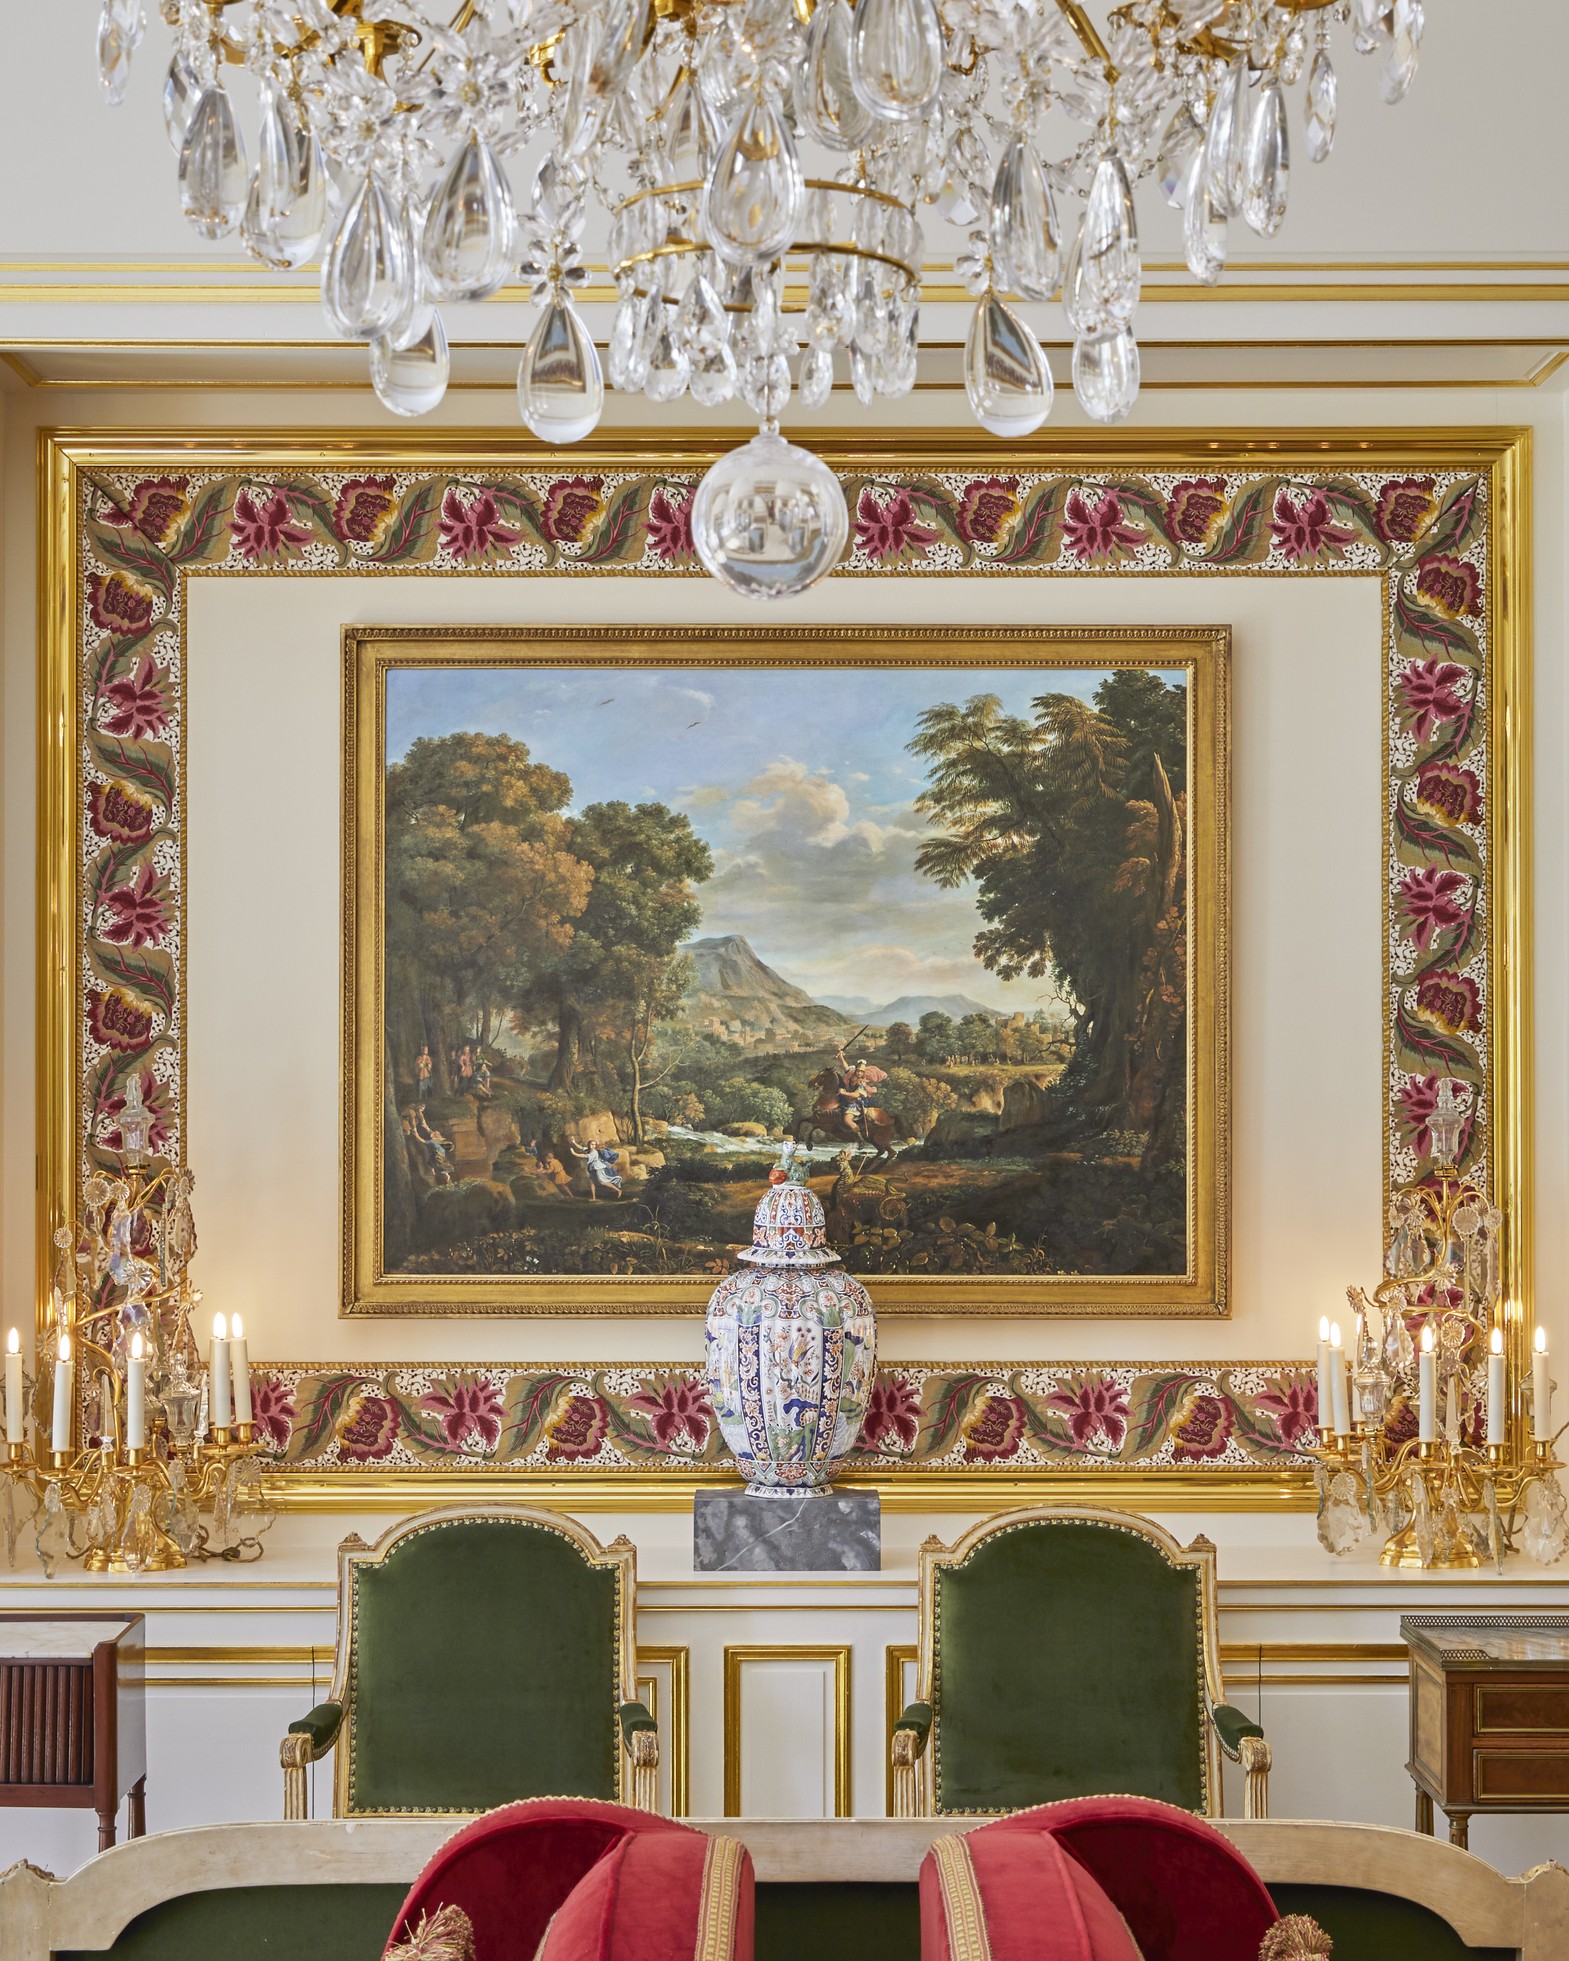 Hotel de luxo é inaugurado no Palácio de Versalhes, com diárias que ultrapassam R$ 154 mil (Foto: Renee Kemps)